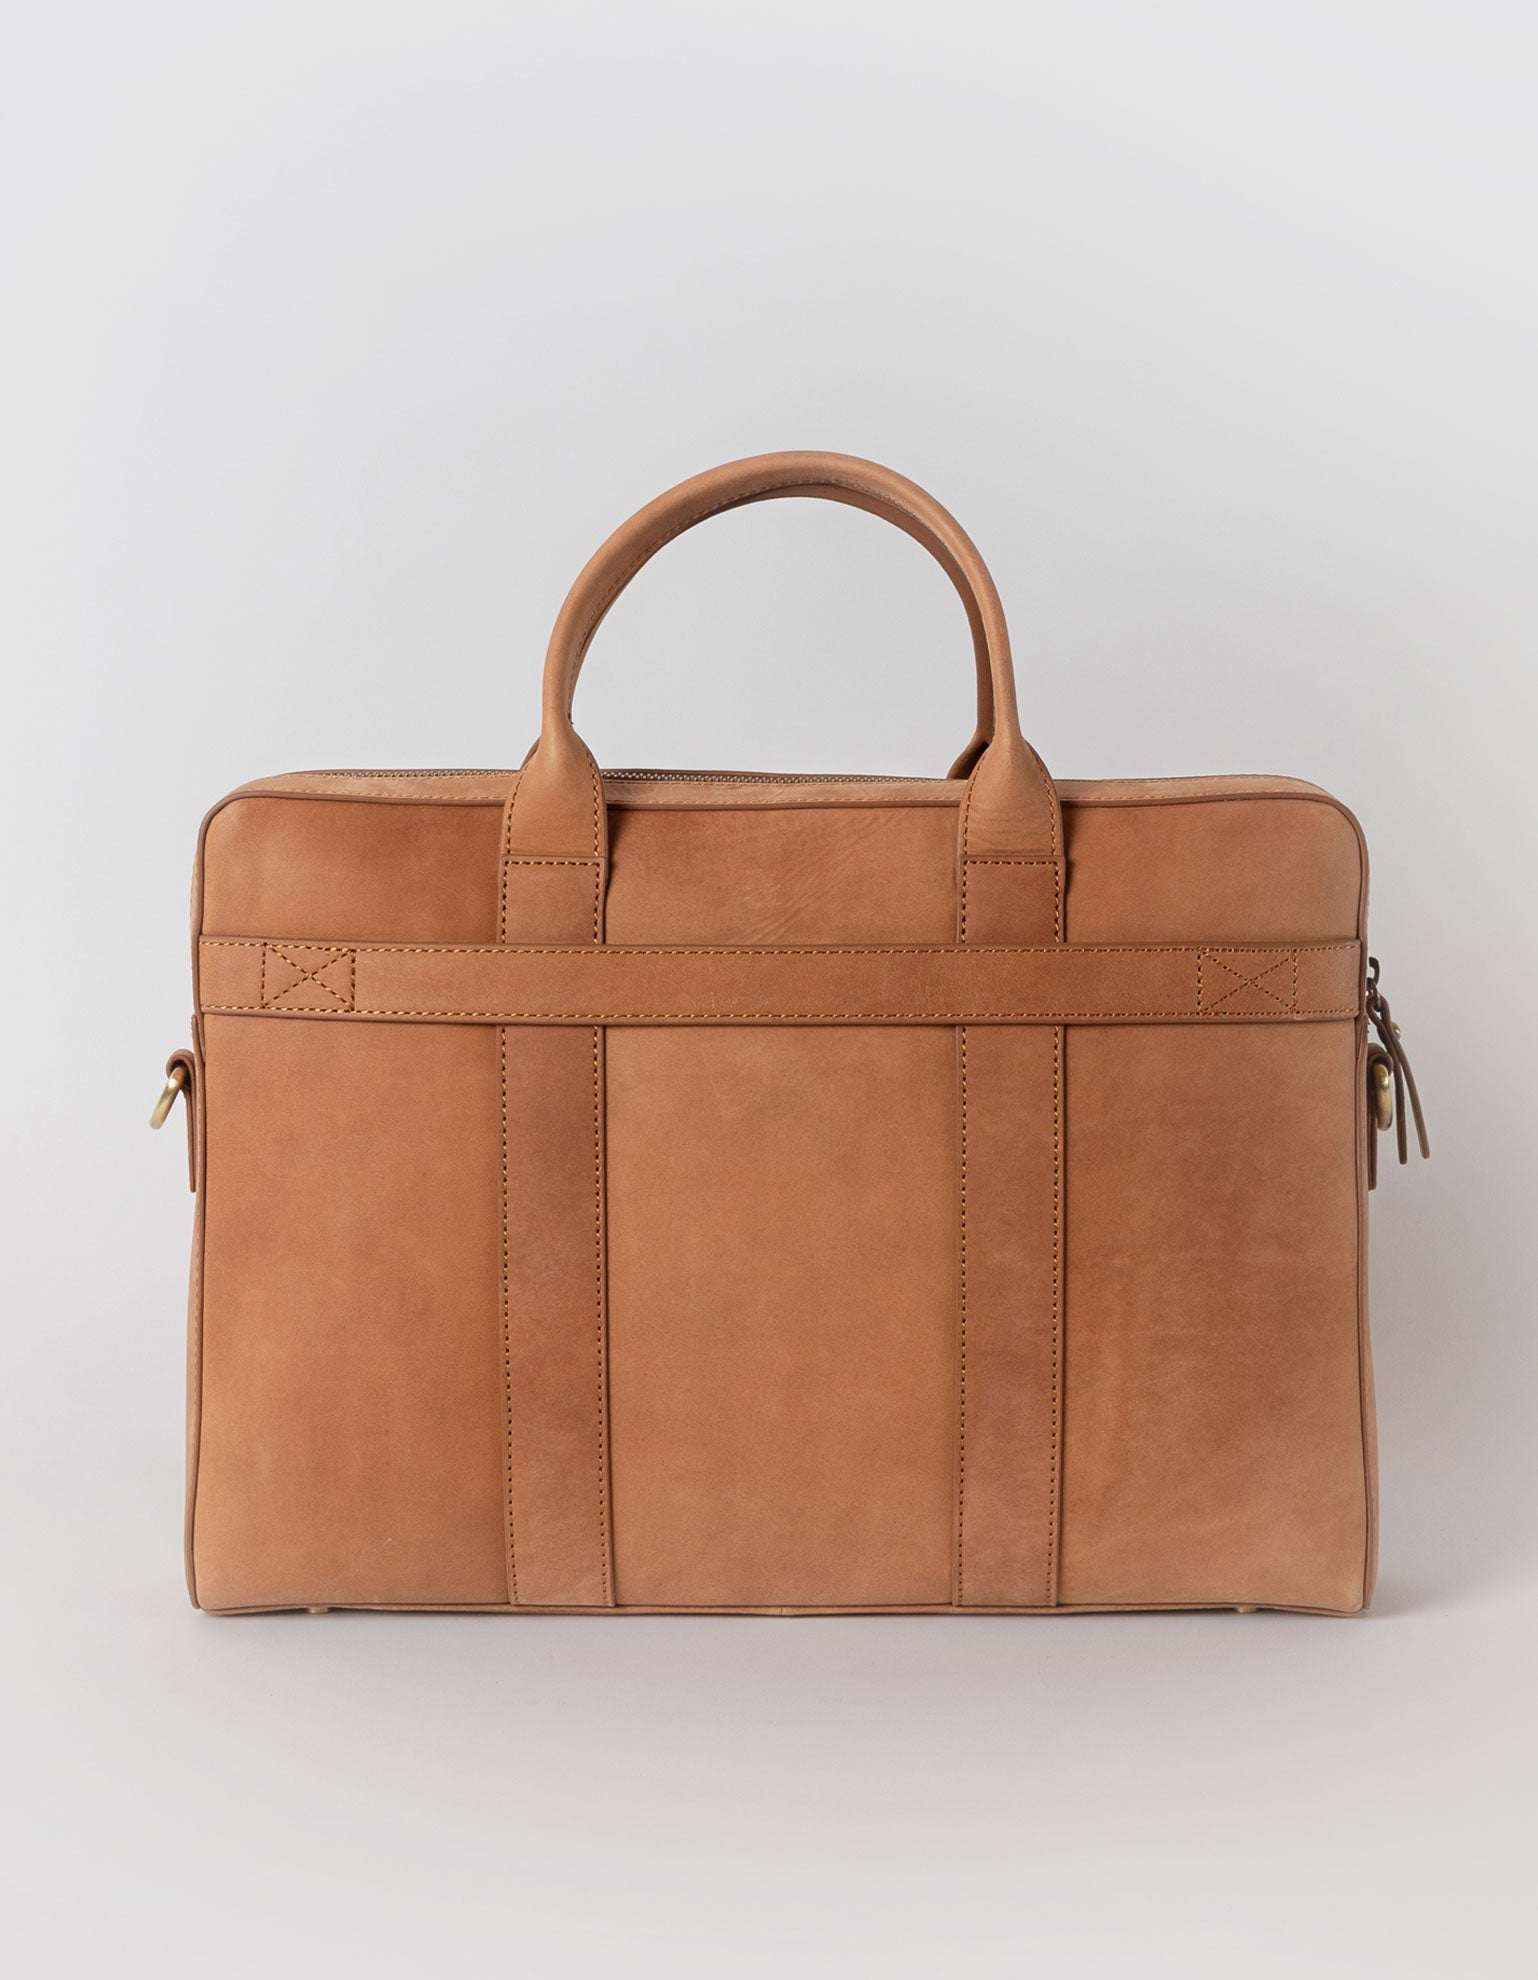 Harvey work bag in camel hunter leather. Back product image.